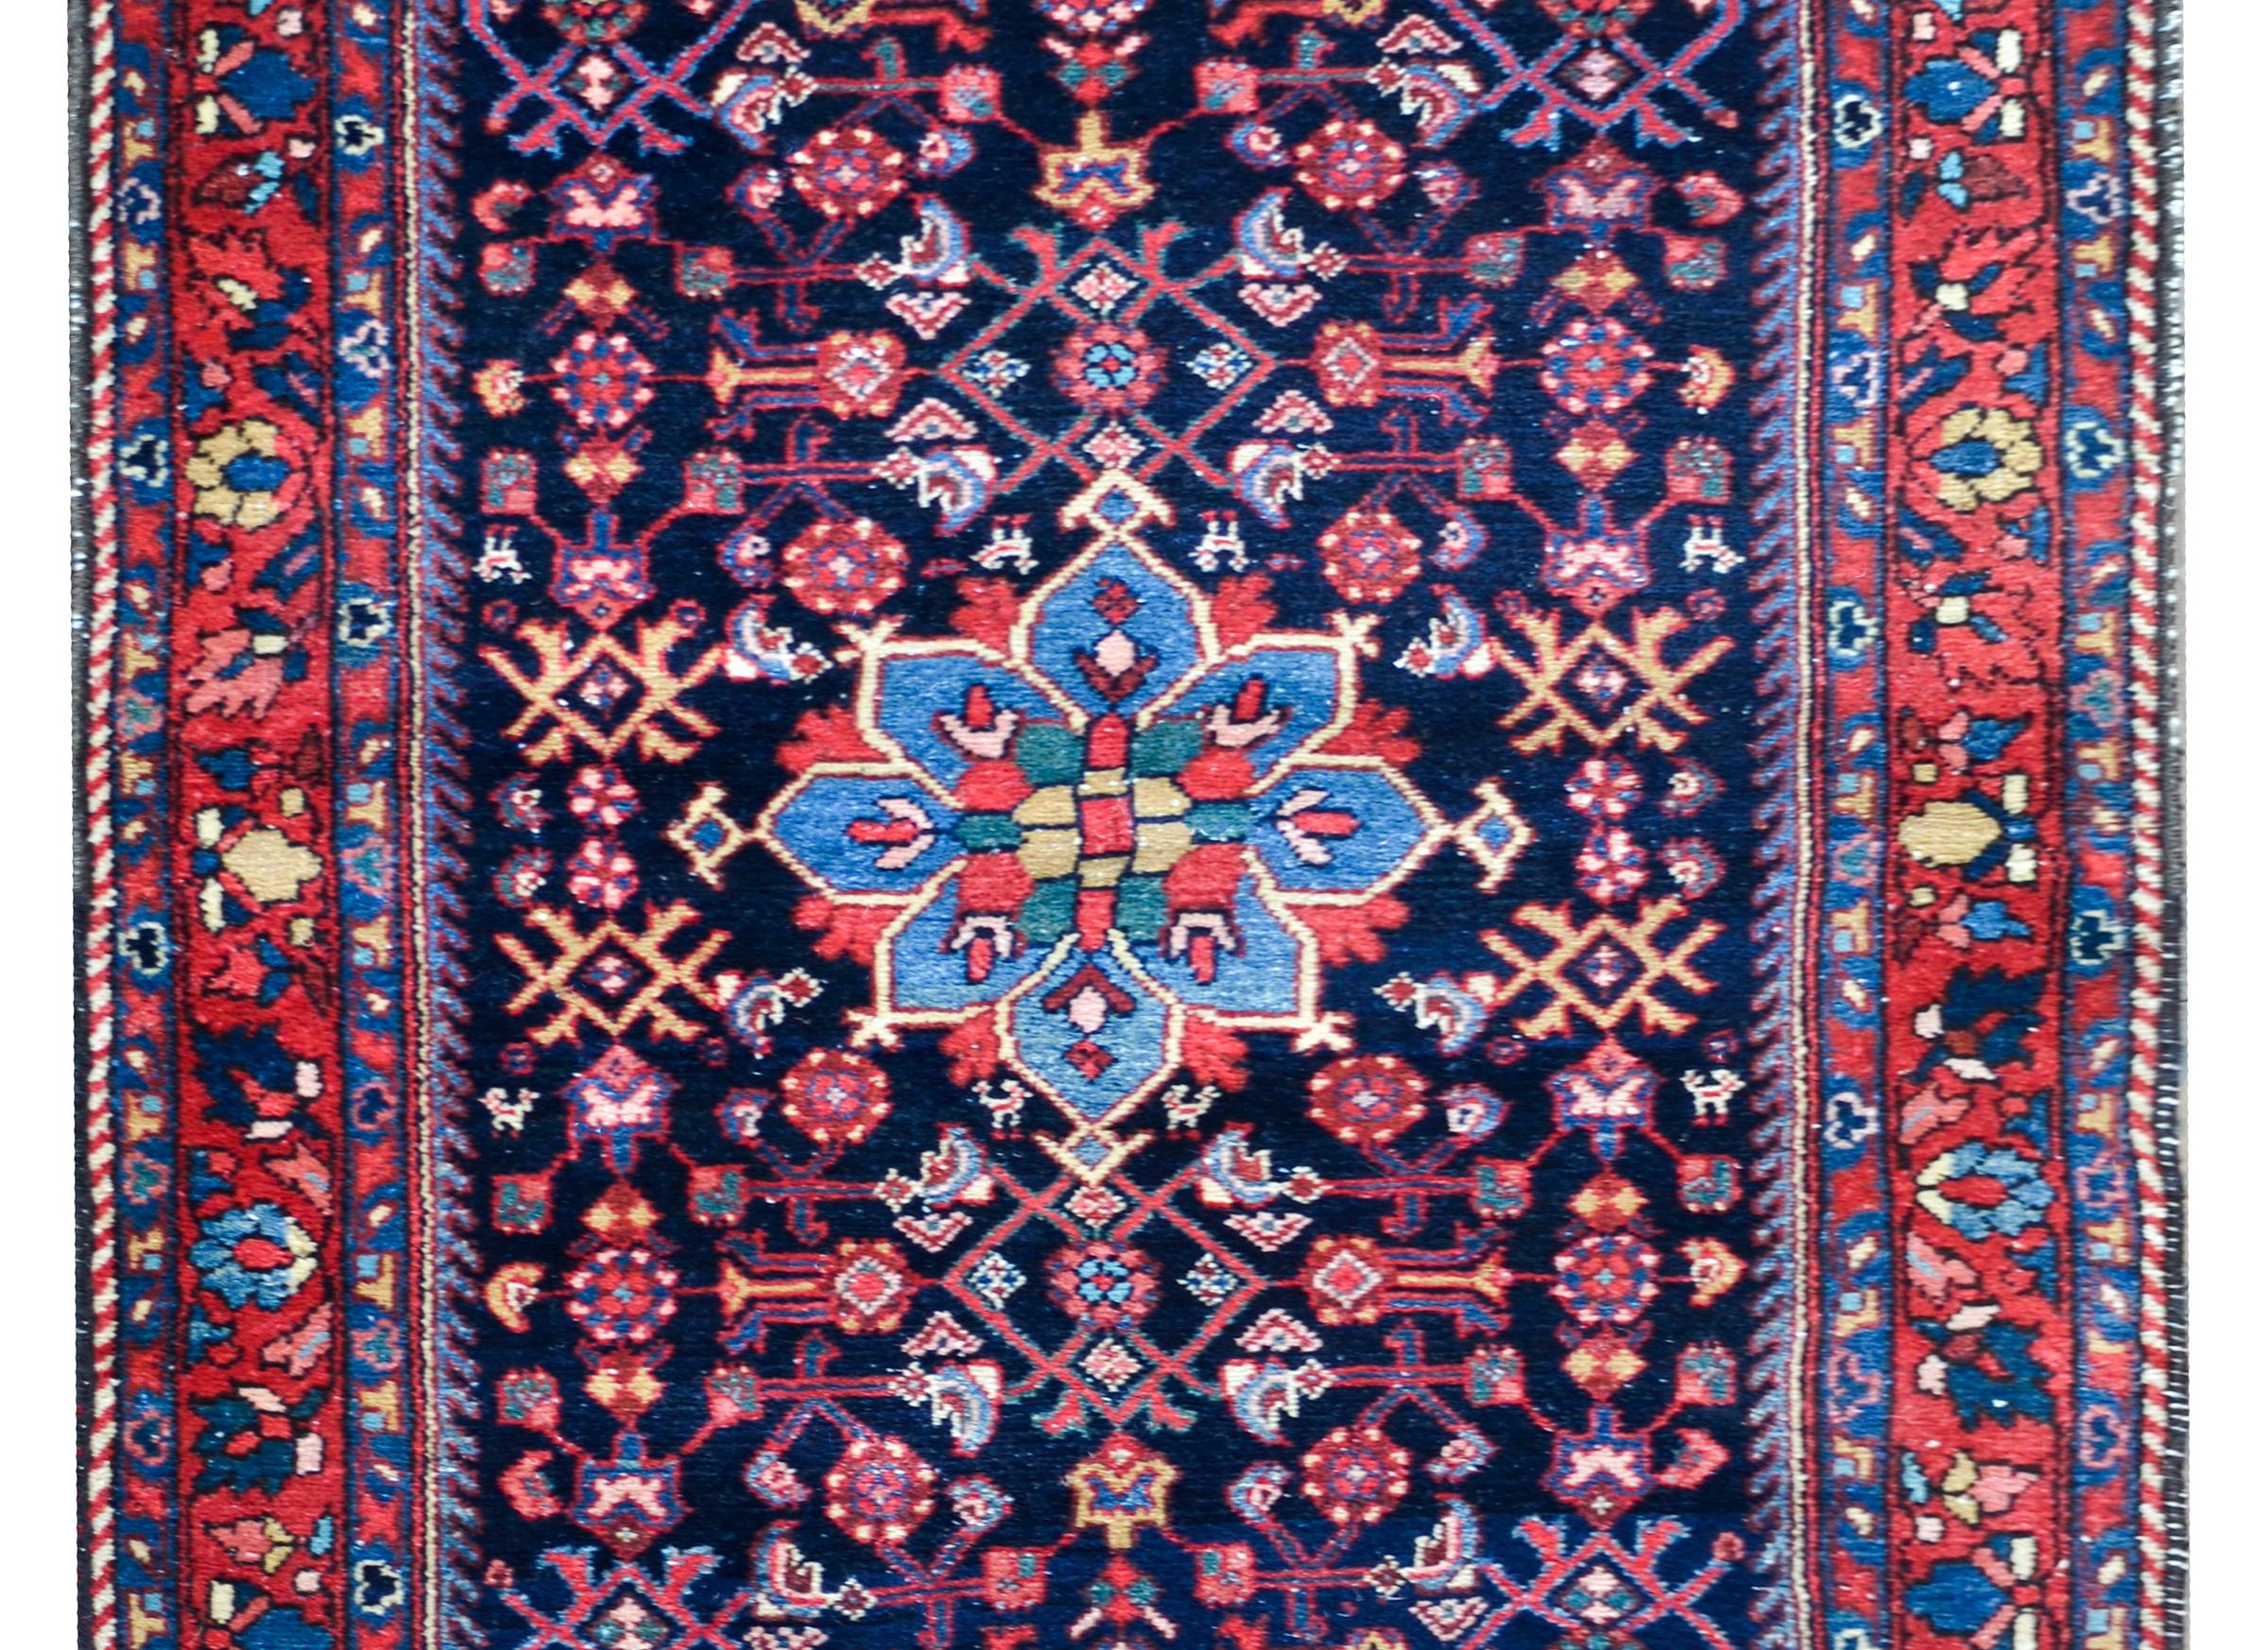 Ein auffälliger persischer Bibikibad-Teppich aus dem frühen 20. Jahrhundert mit einem stilisierten Blumen- und Rankenmuster, das in Karminrot, hellem und dunklem Indigo, Gold und Weiß vor einem dunklen indigoblauen Hintergrund gewebt ist. Die